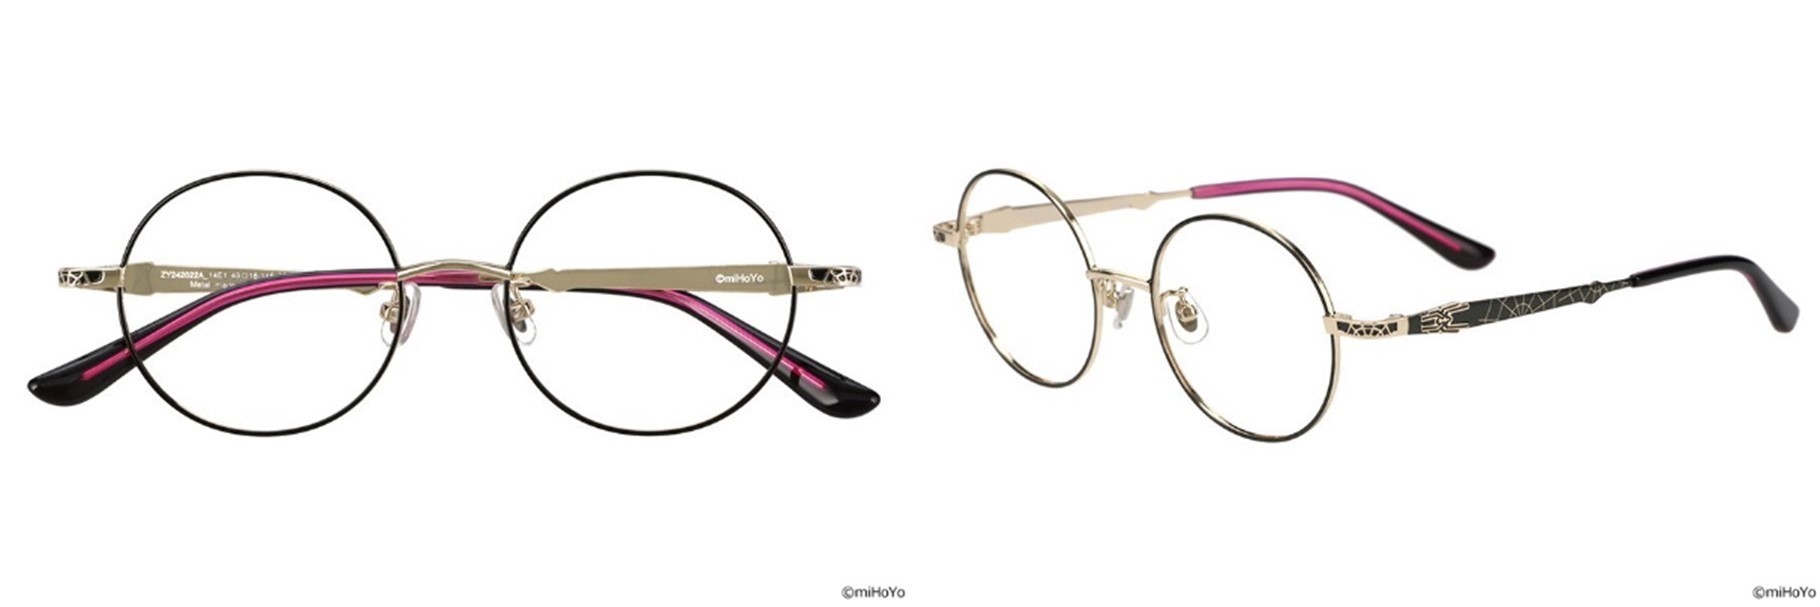 《崩坏：星穹铁道》xZoff联名眼镜今日开放预购公开四种联名眼镜款式